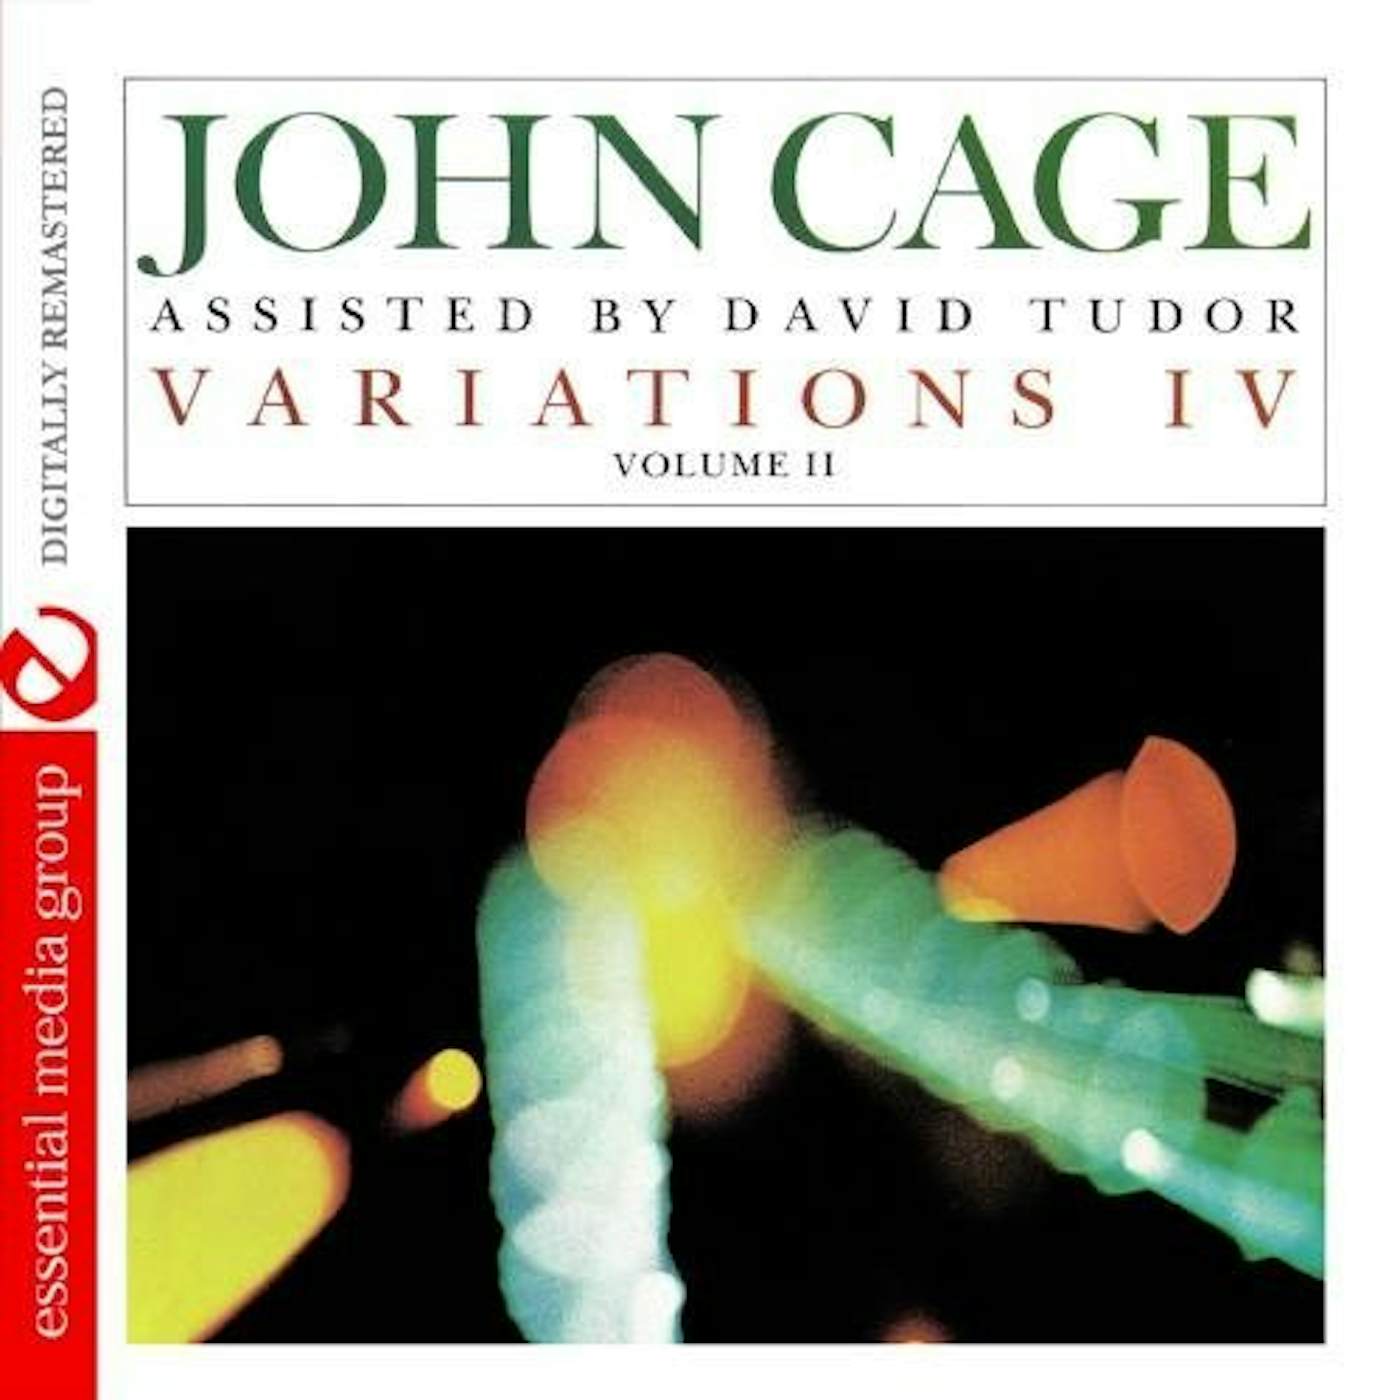 John Cage VARIATIONS IV 2 CD